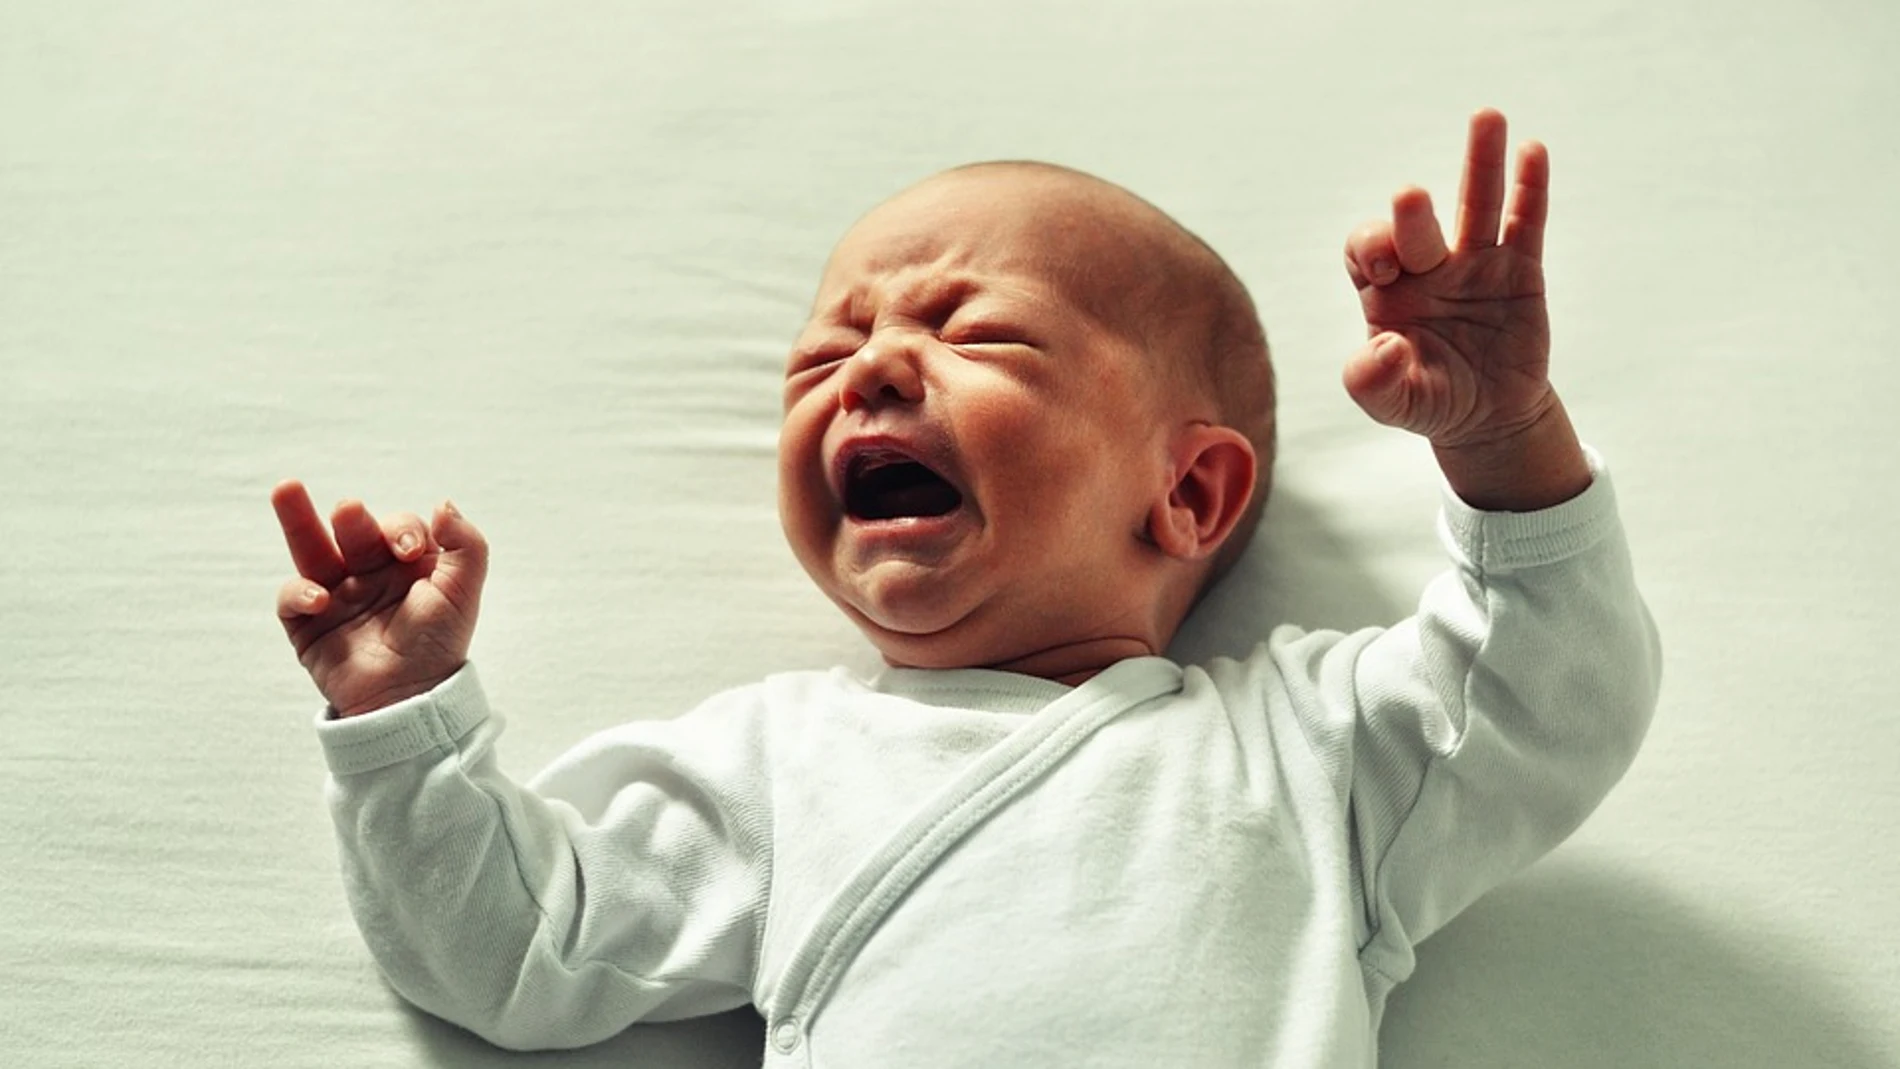 El lloro intenso y prolongado del bebé es el principal desencadenante de la actitud descontrolada de padres y cuidadores que puede producir síndrome del bebé sacudido